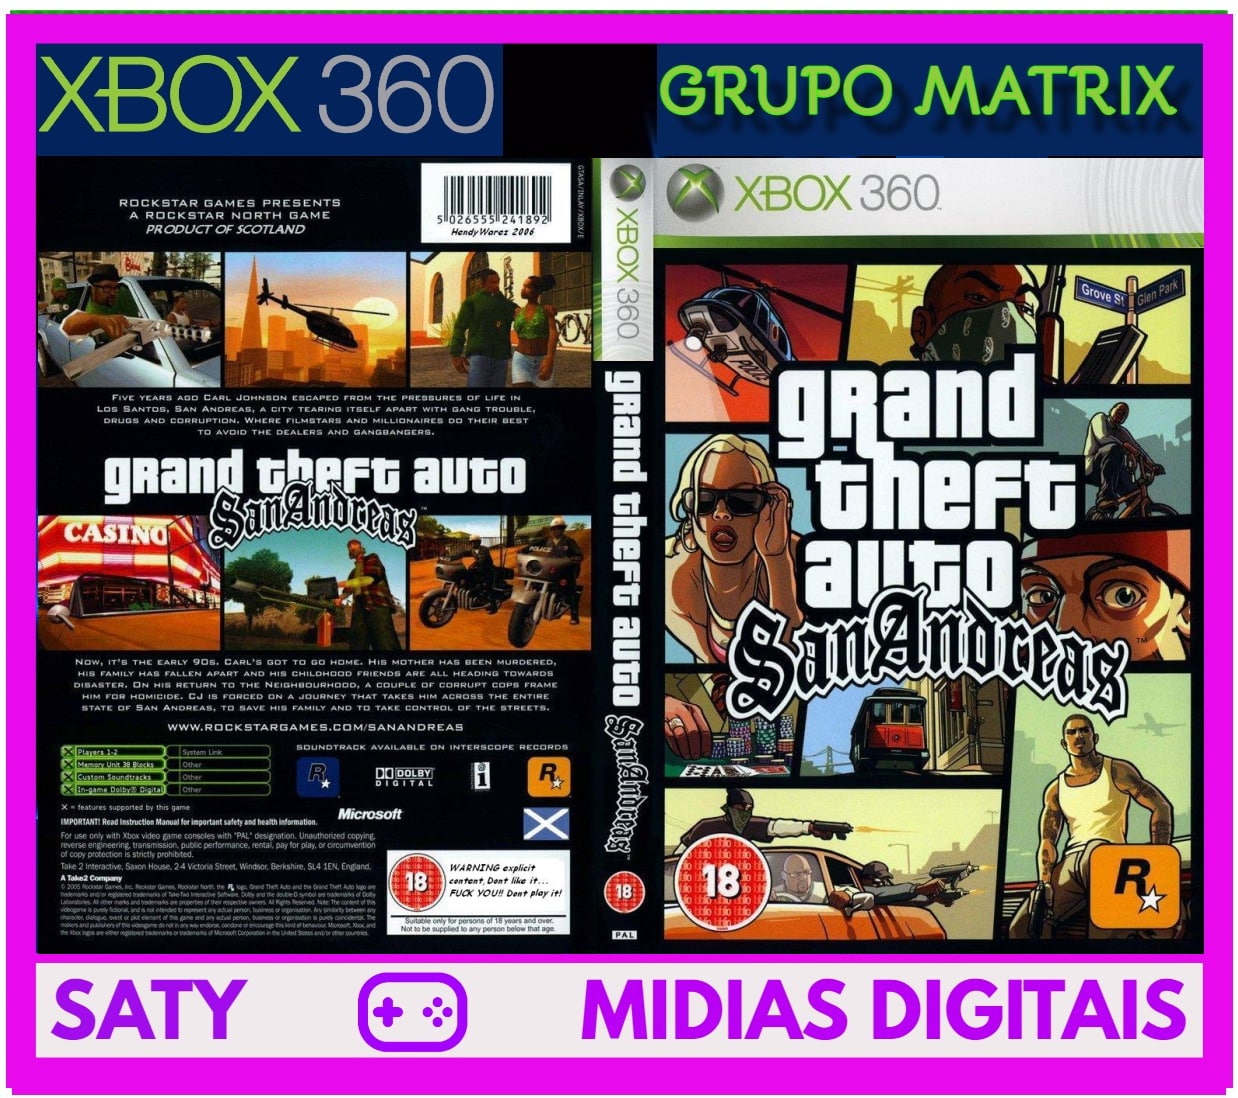 GTA San Andreas: como baixar e jogar o game no Xbox One